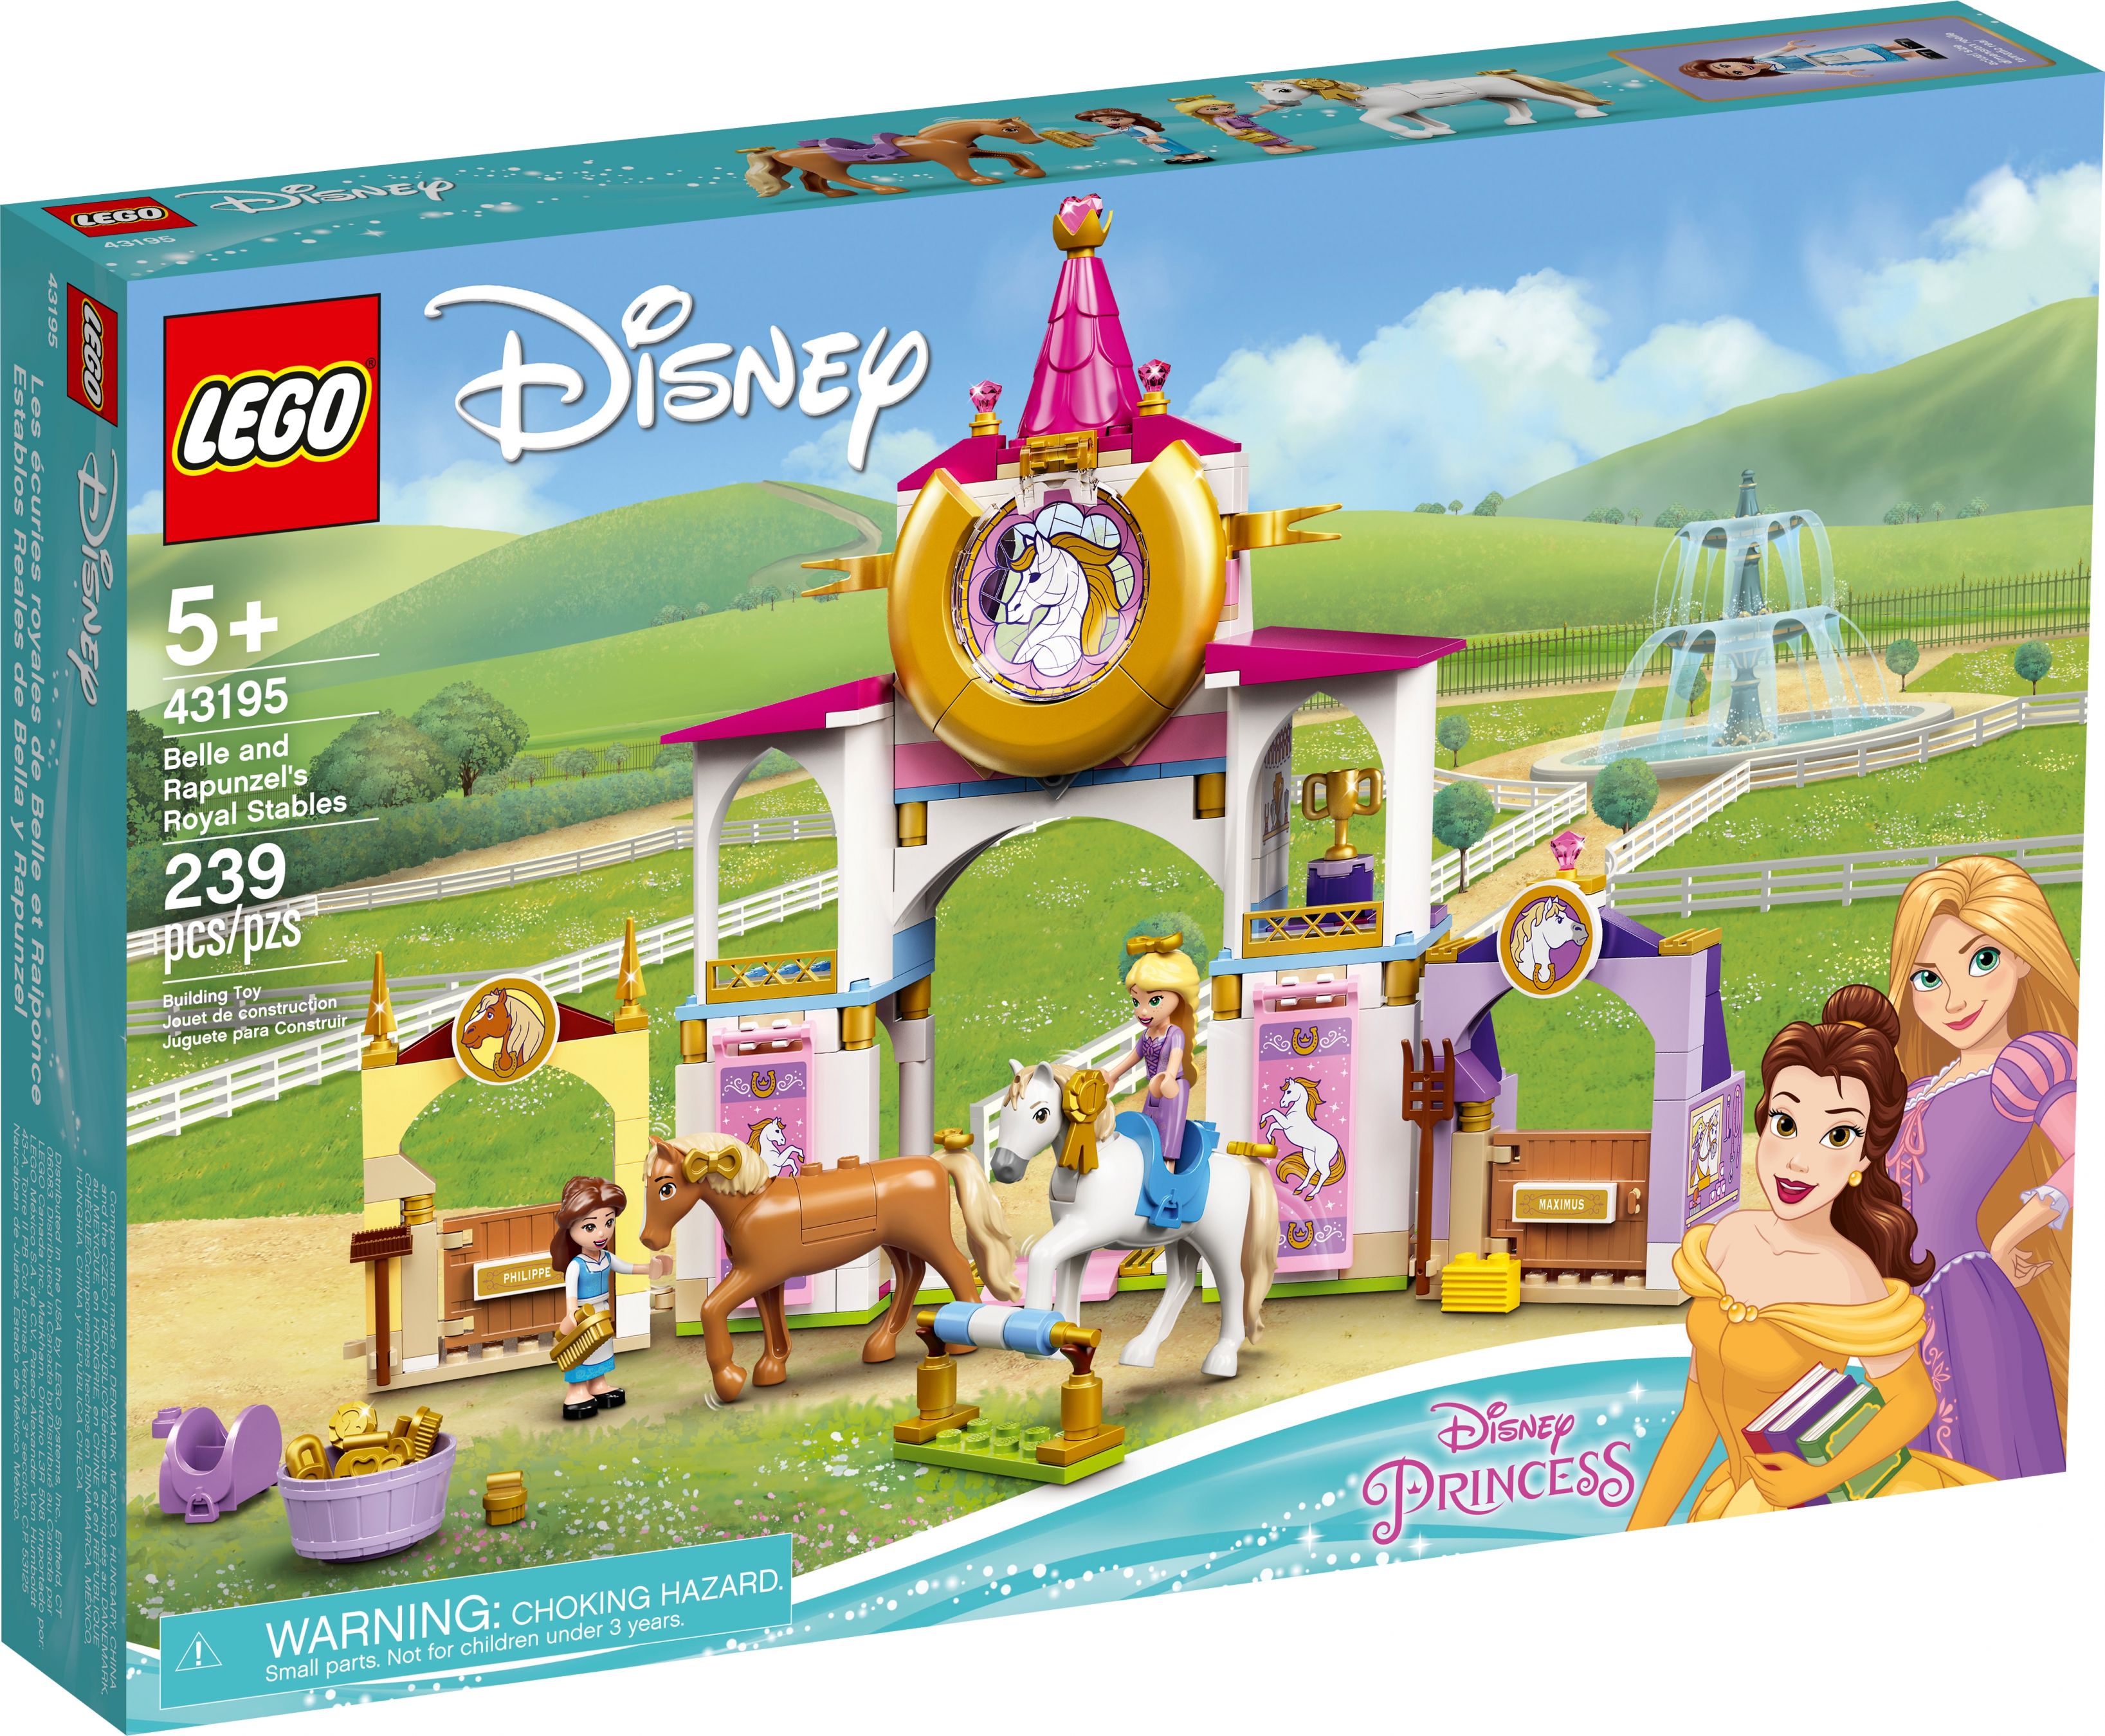 LEGO Disney 43195 Belles und Rapunzels königliche Ställe LEGO_43195_alt1.jpg